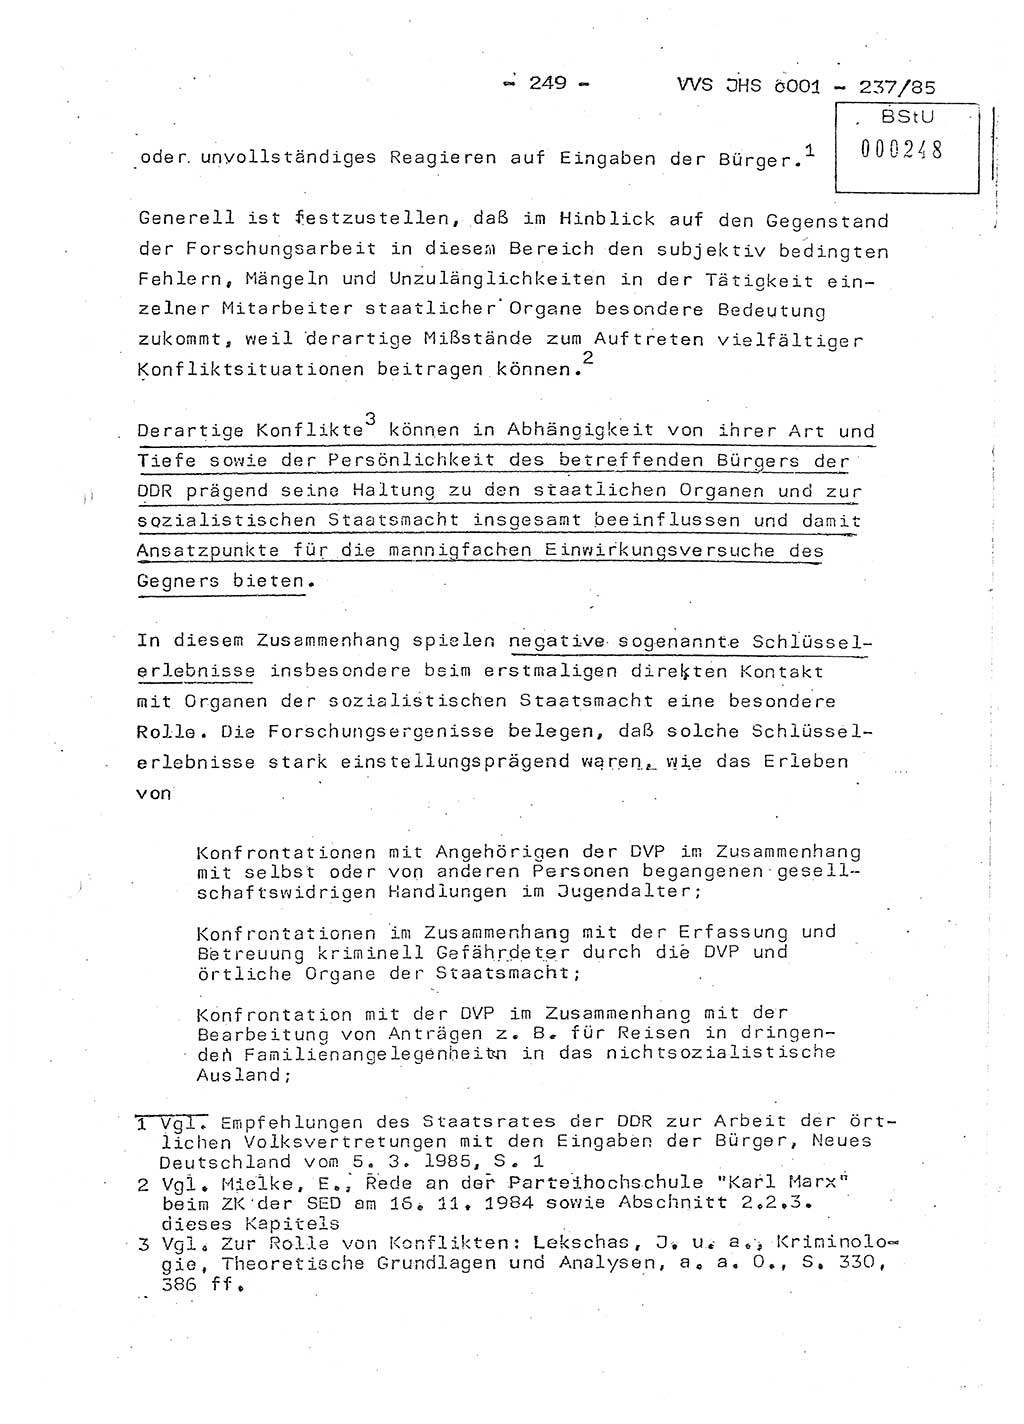 Dissertation Oberstleutnant Peter Jakulski (JHS), Oberstleutnat Christian Rudolph (HA Ⅸ), Major Horst Böttger (ZMD), Major Wolfgang Grüneberg (JHS), Major Albert Meutsch (JHS), Ministerium für Staatssicherheit (MfS) [Deutsche Demokratische Republik (DDR)], Juristische Hochschule (JHS), Vertrauliche Verschlußsache (VVS) o001-237/85, Potsdam 1985, Seite 249 (Diss. MfS DDR JHS VVS o001-237/85 1985, S. 249)